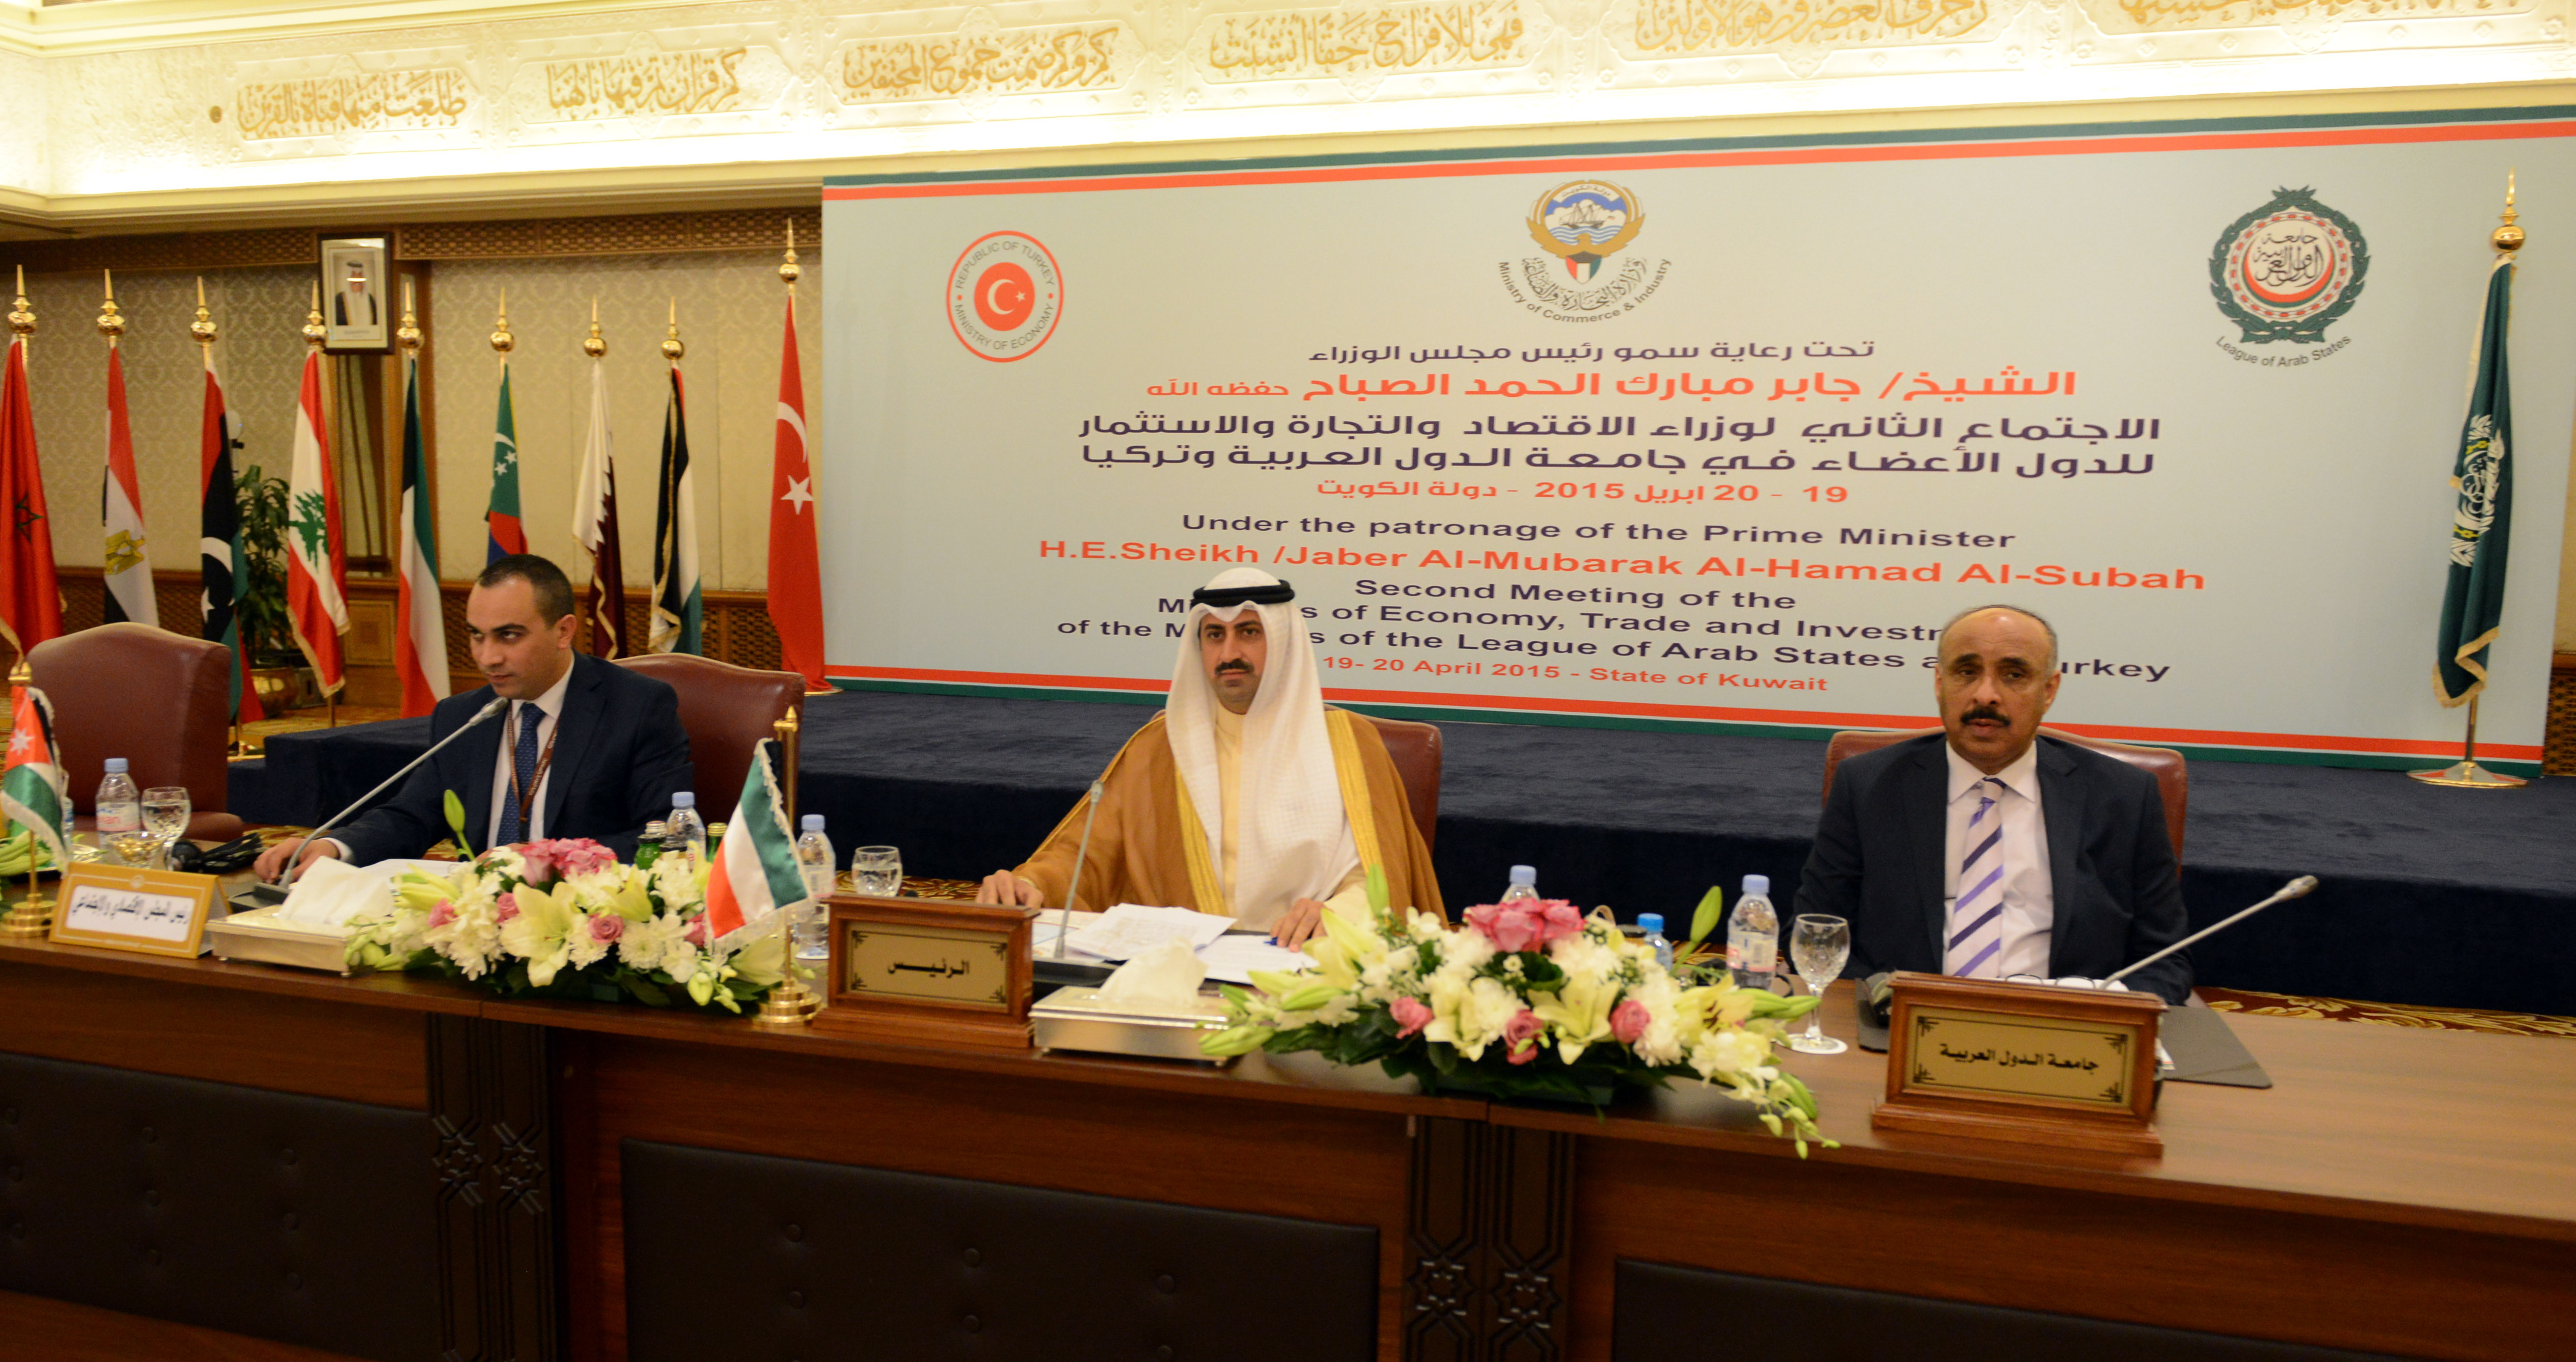 الكويت تستضيف غدا الاجتماع الثاني لوزراء الاقتصاد والتجارة العرب وتركيا